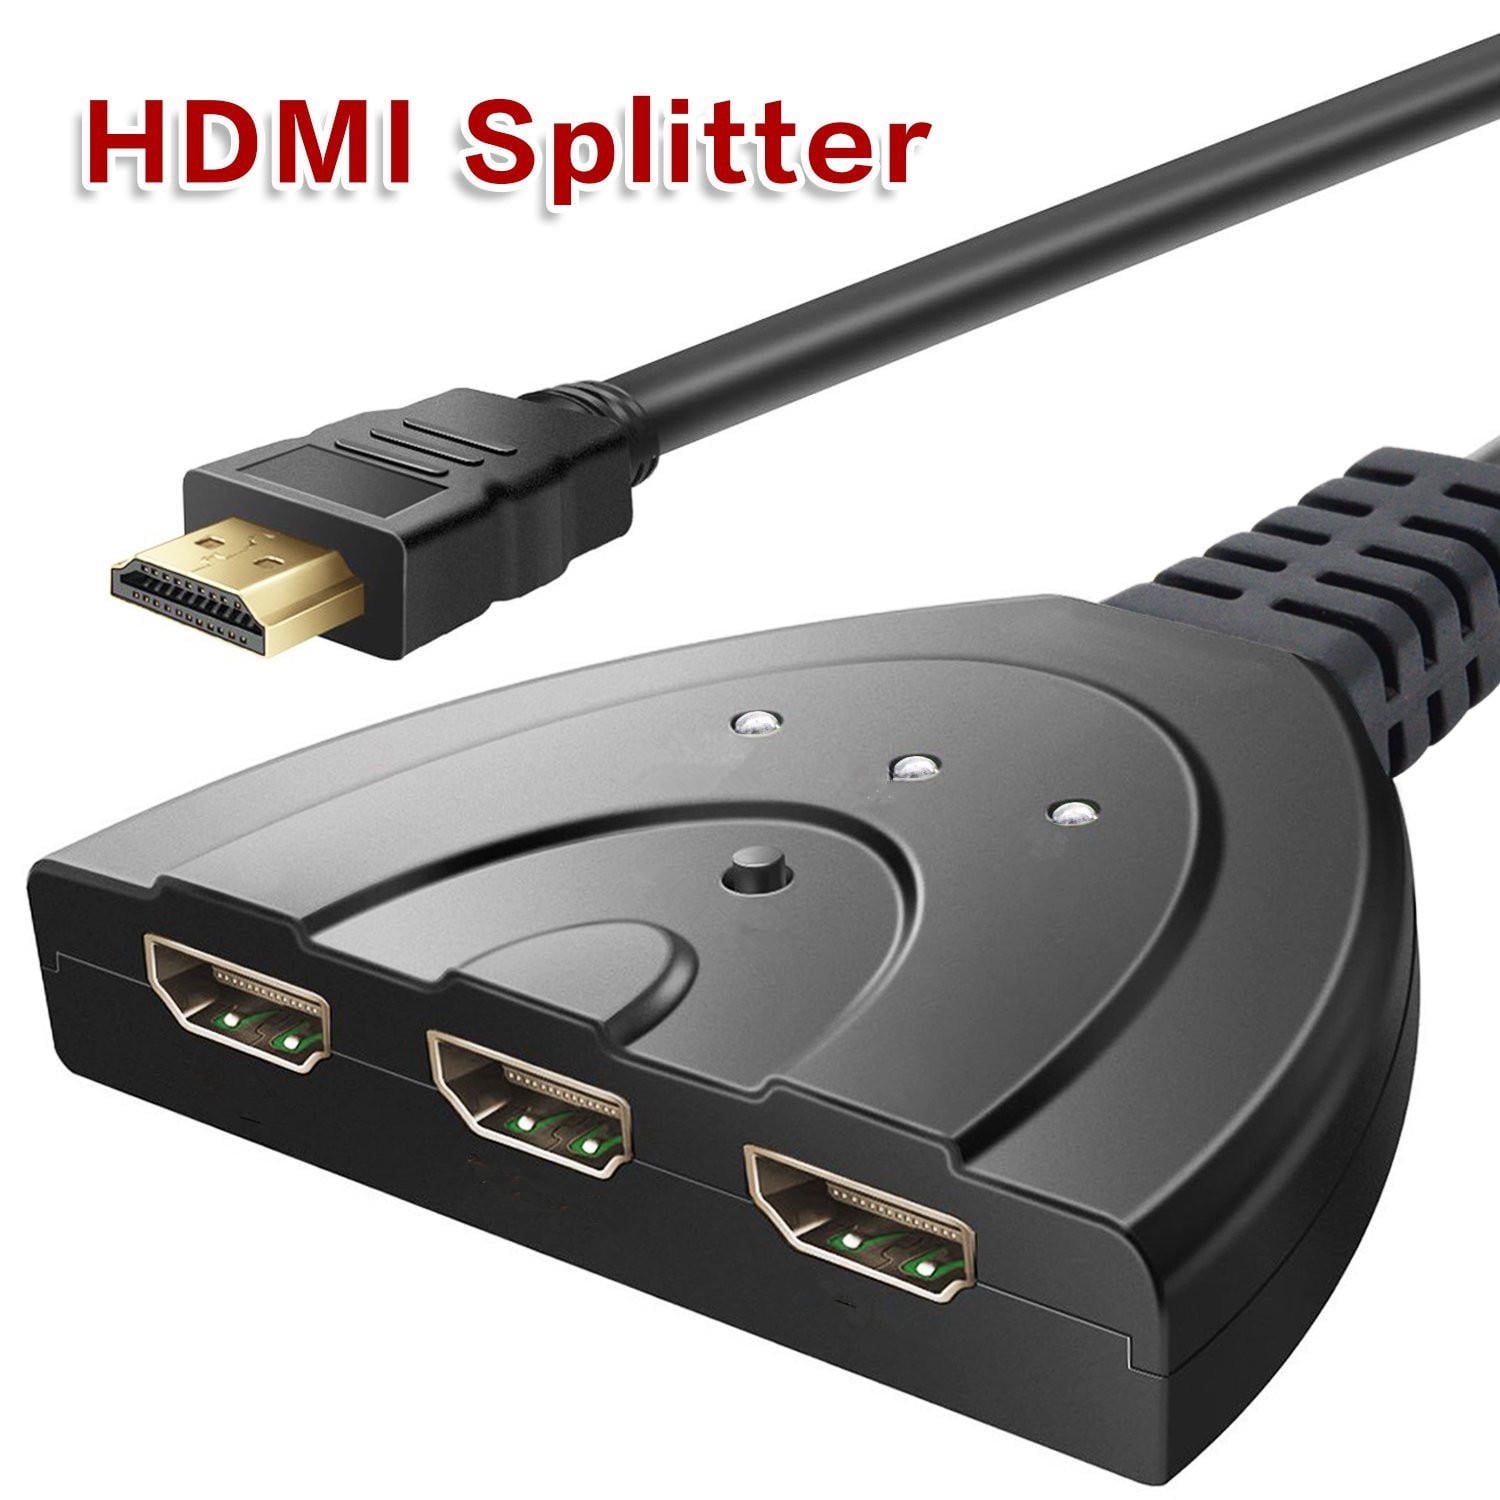 Plateau Cirkel utilfredsstillende 3 Port HDMI Switcher Splitter 3D 1080P Full HD 3 Input 1 Output Auto High  Speed HDMI Switch Switcher Splitter Cable Hub Box Adapter for HDTV DVD Xbox  360 With 24K Gold